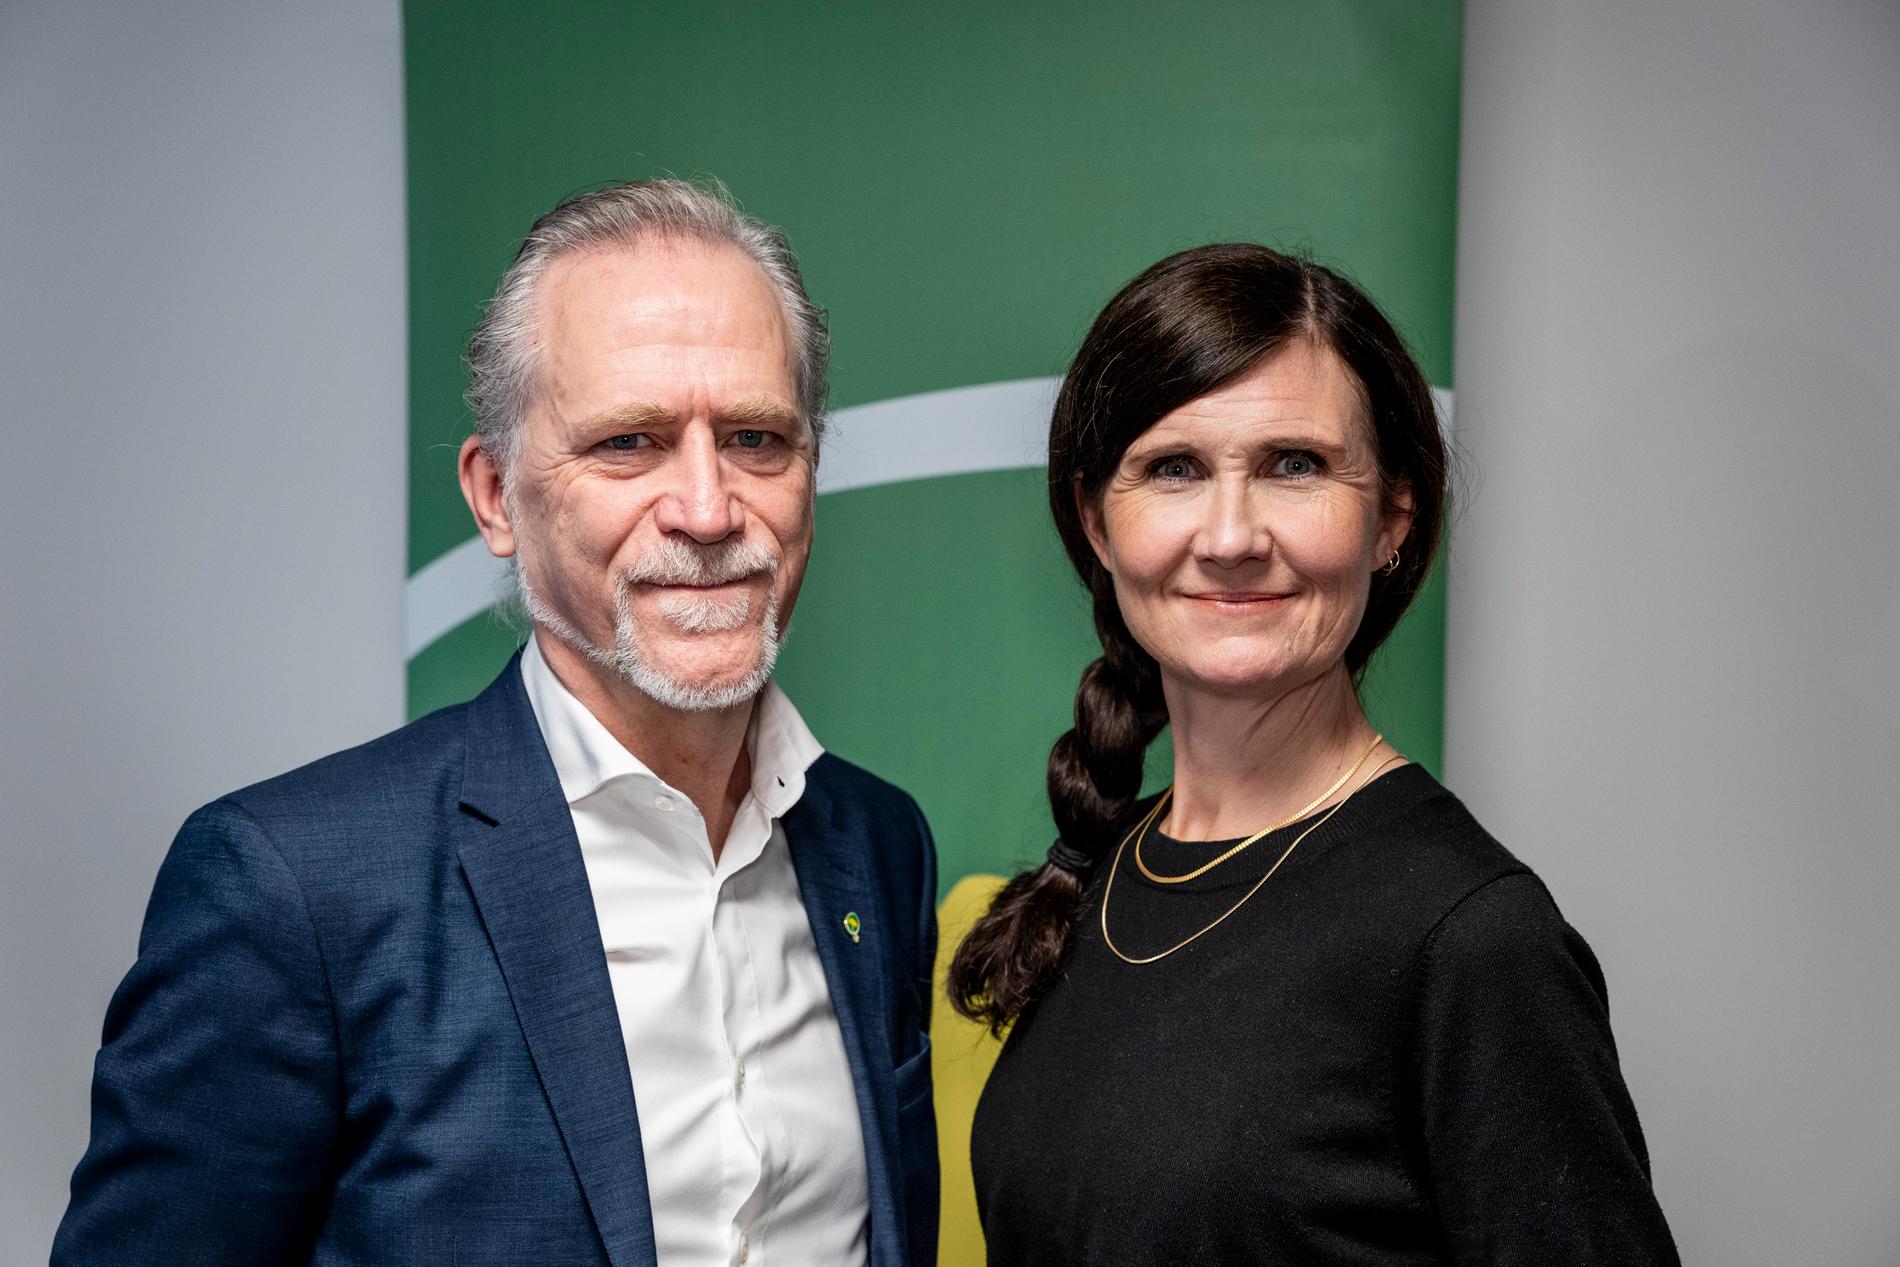 Daniel Helldén och Märta Stenevi är valberedningens förslag till språkrör för Miljöpartiet.